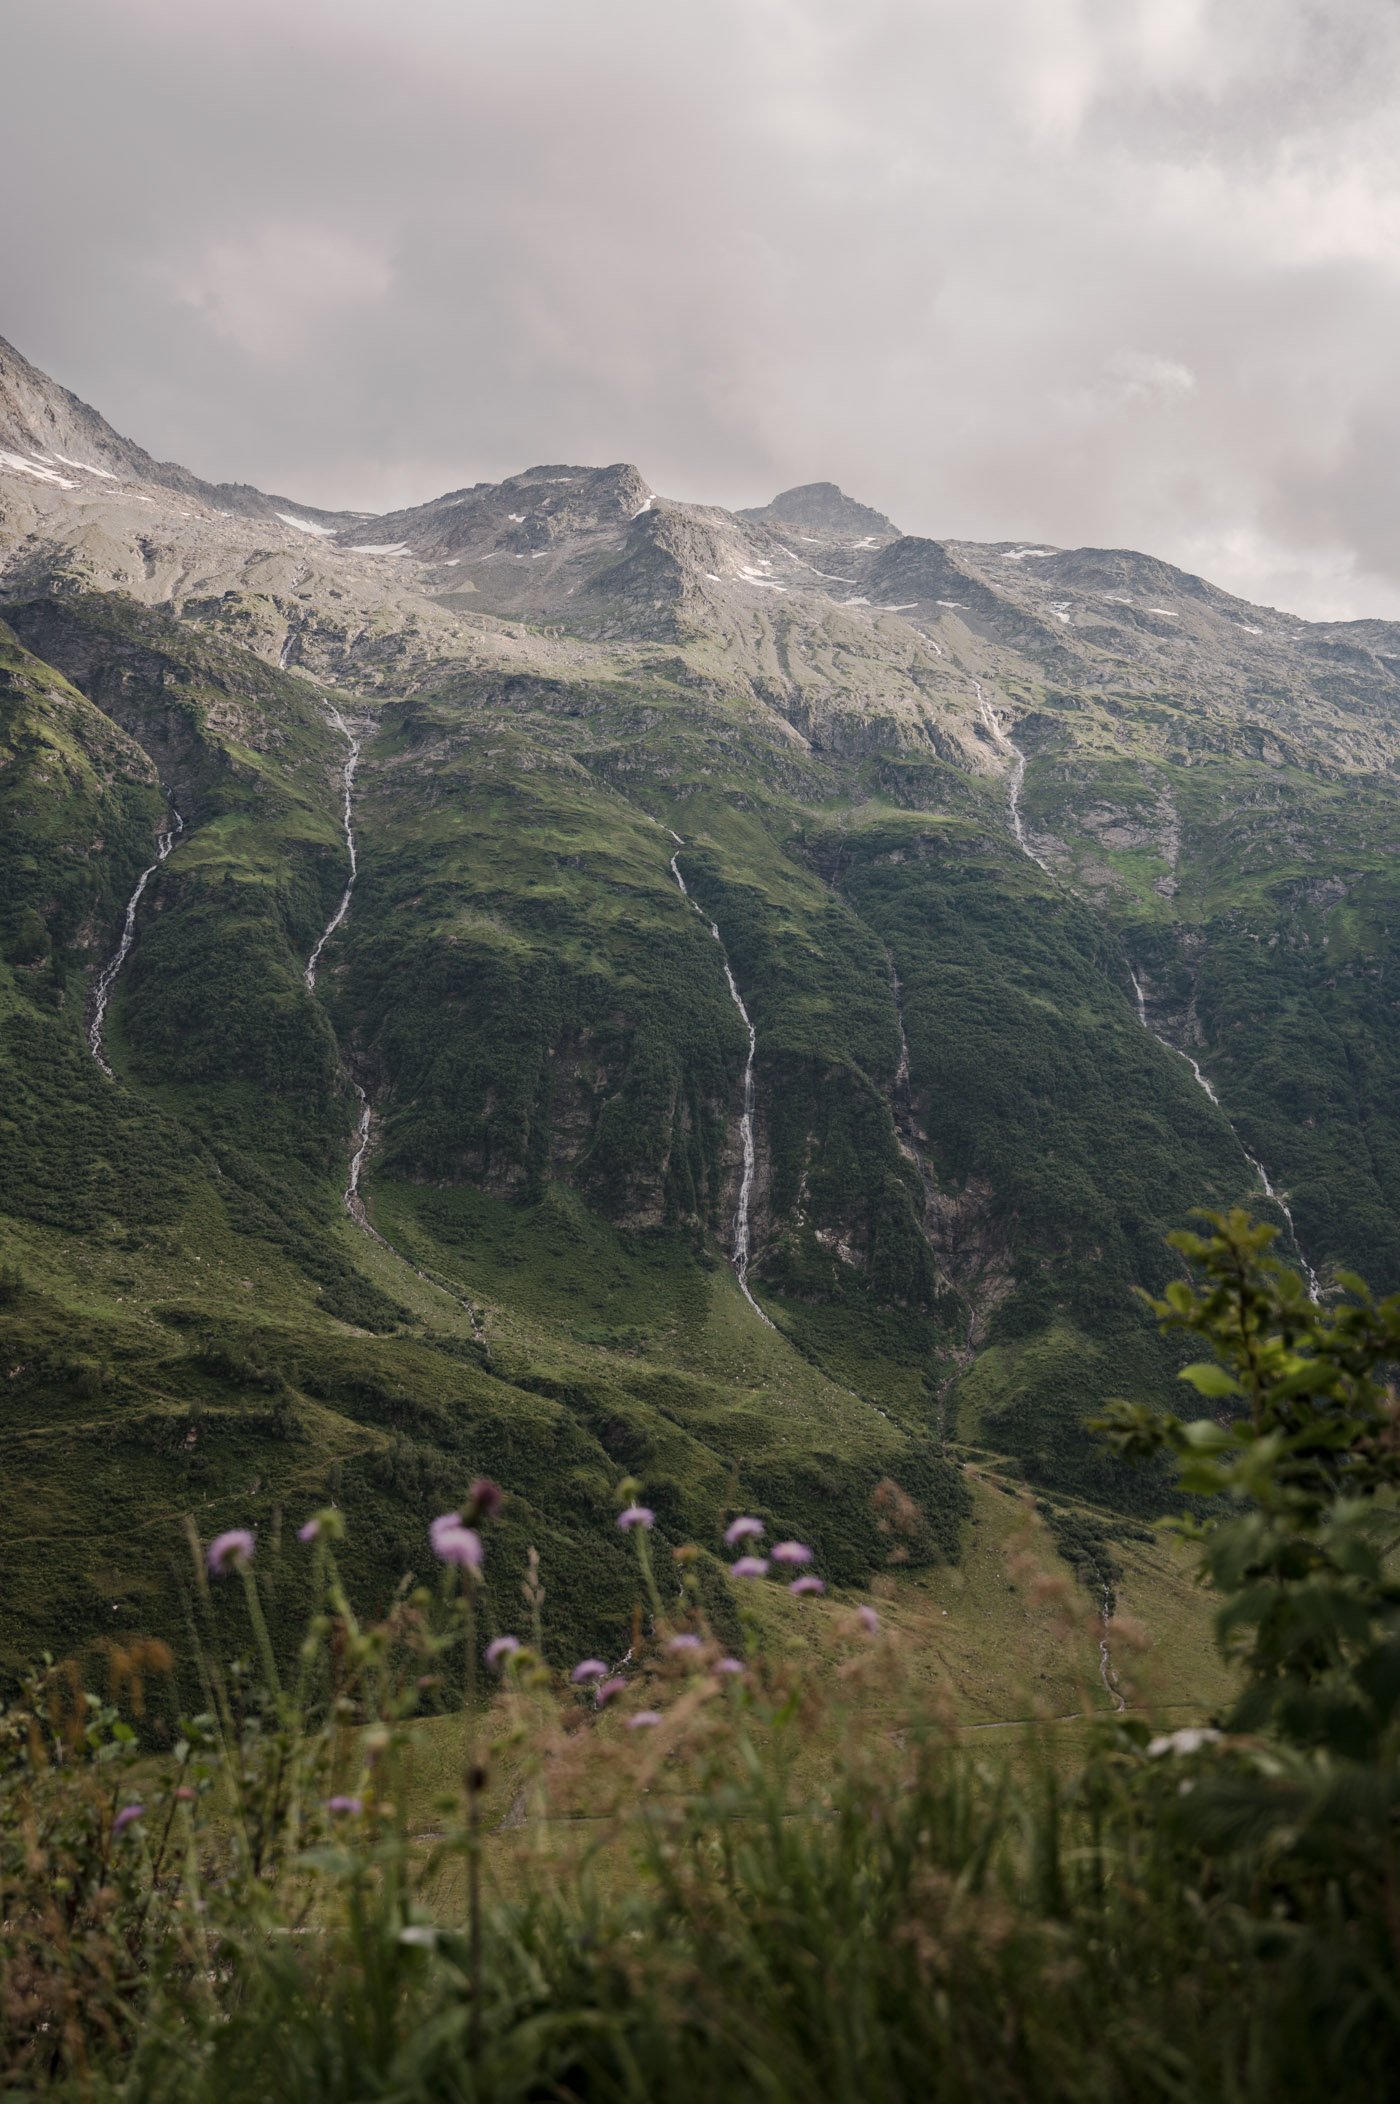 Innergschlöss East Tyrol Mindful mountain retreat